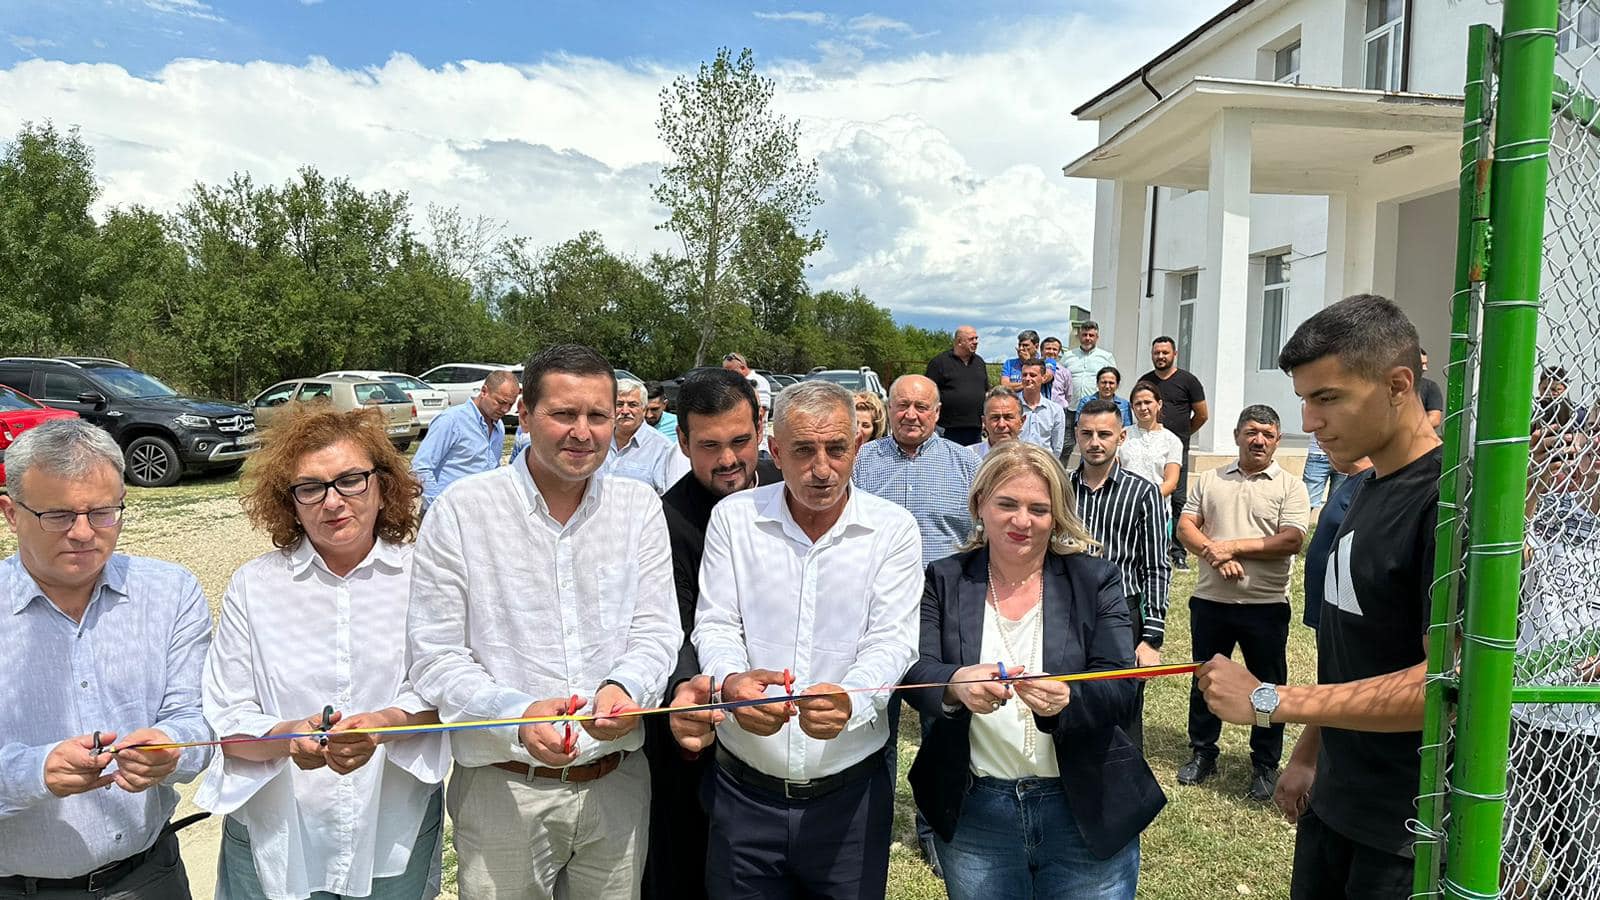 Loc de joacă și teren de sport multifuncțional, inaugurate în satele Șelaru și Fierbinți. Investițiile sunt realizate cu sprijinul Consiliului Județean Dâmbovița, prin Programul Județean de Dezvoltare Locală (PJDL)